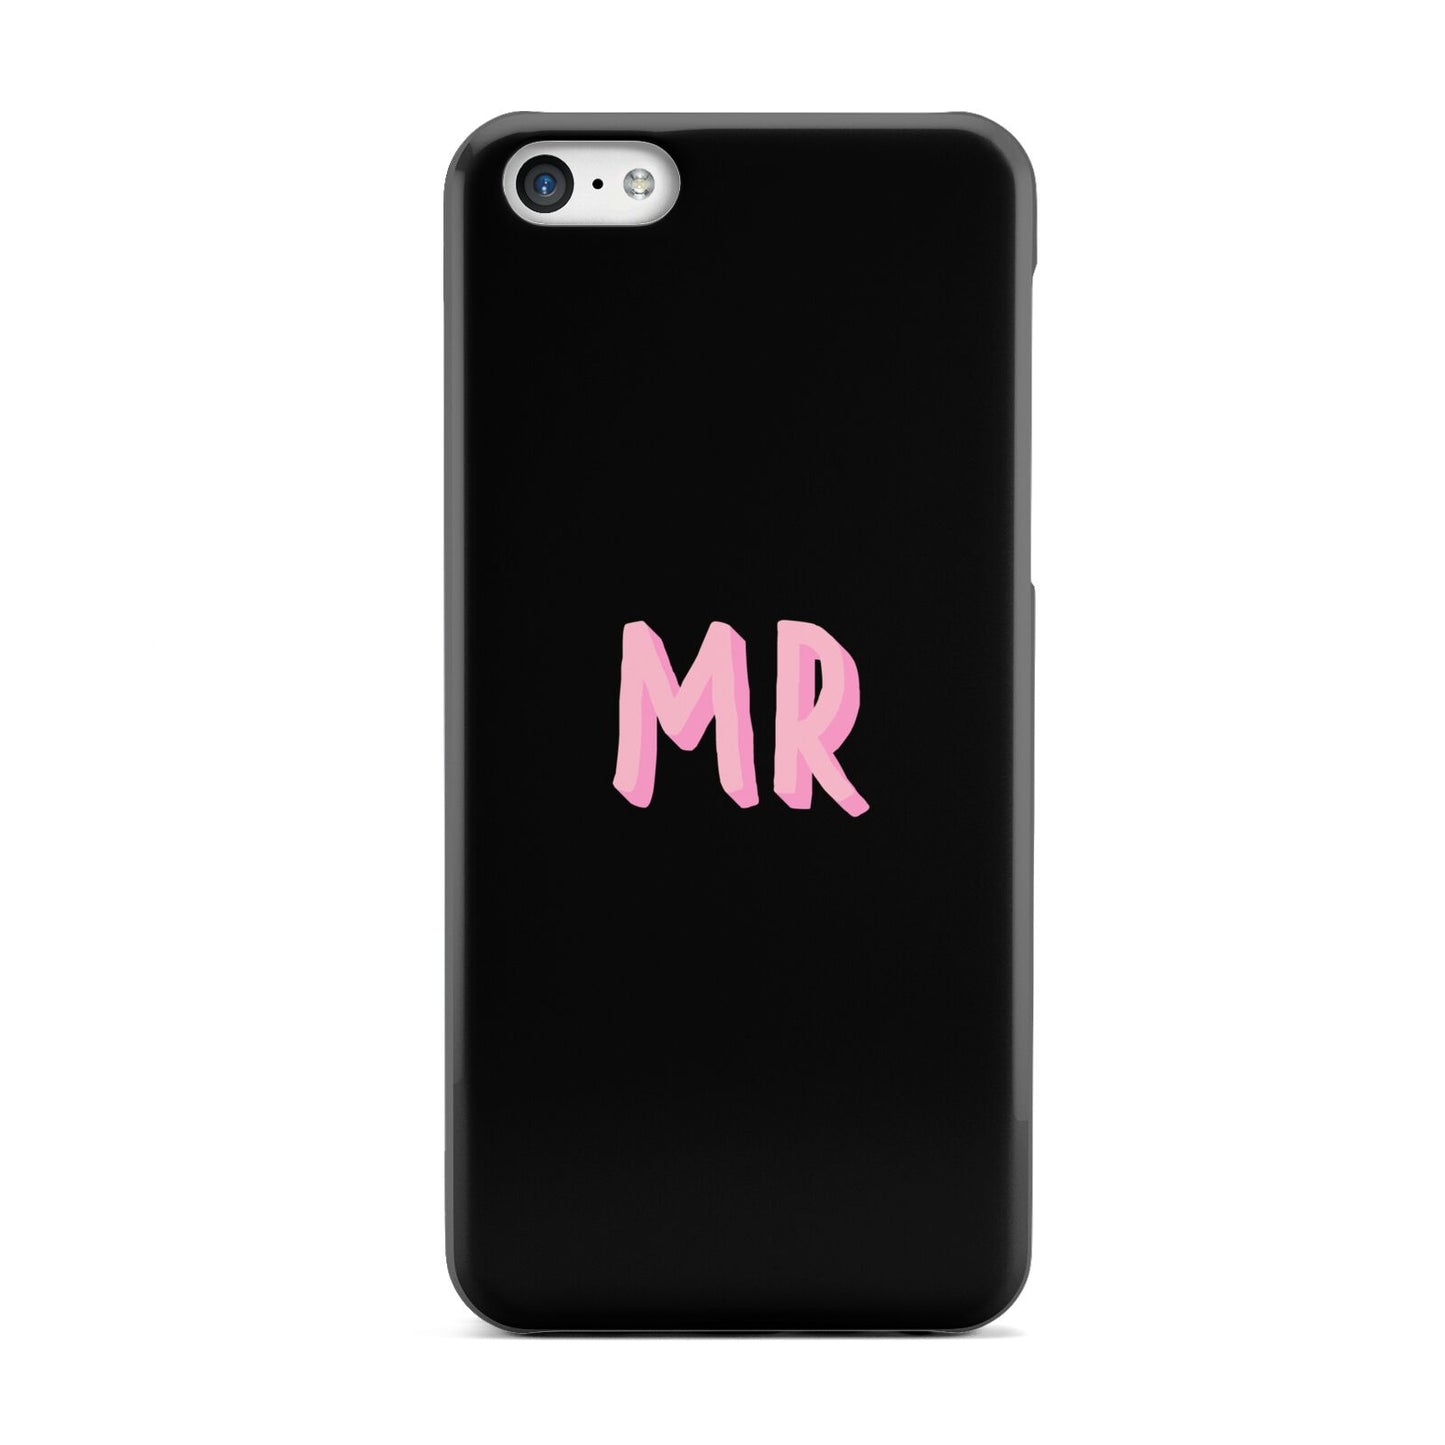 Mr Apple iPhone 5c Case